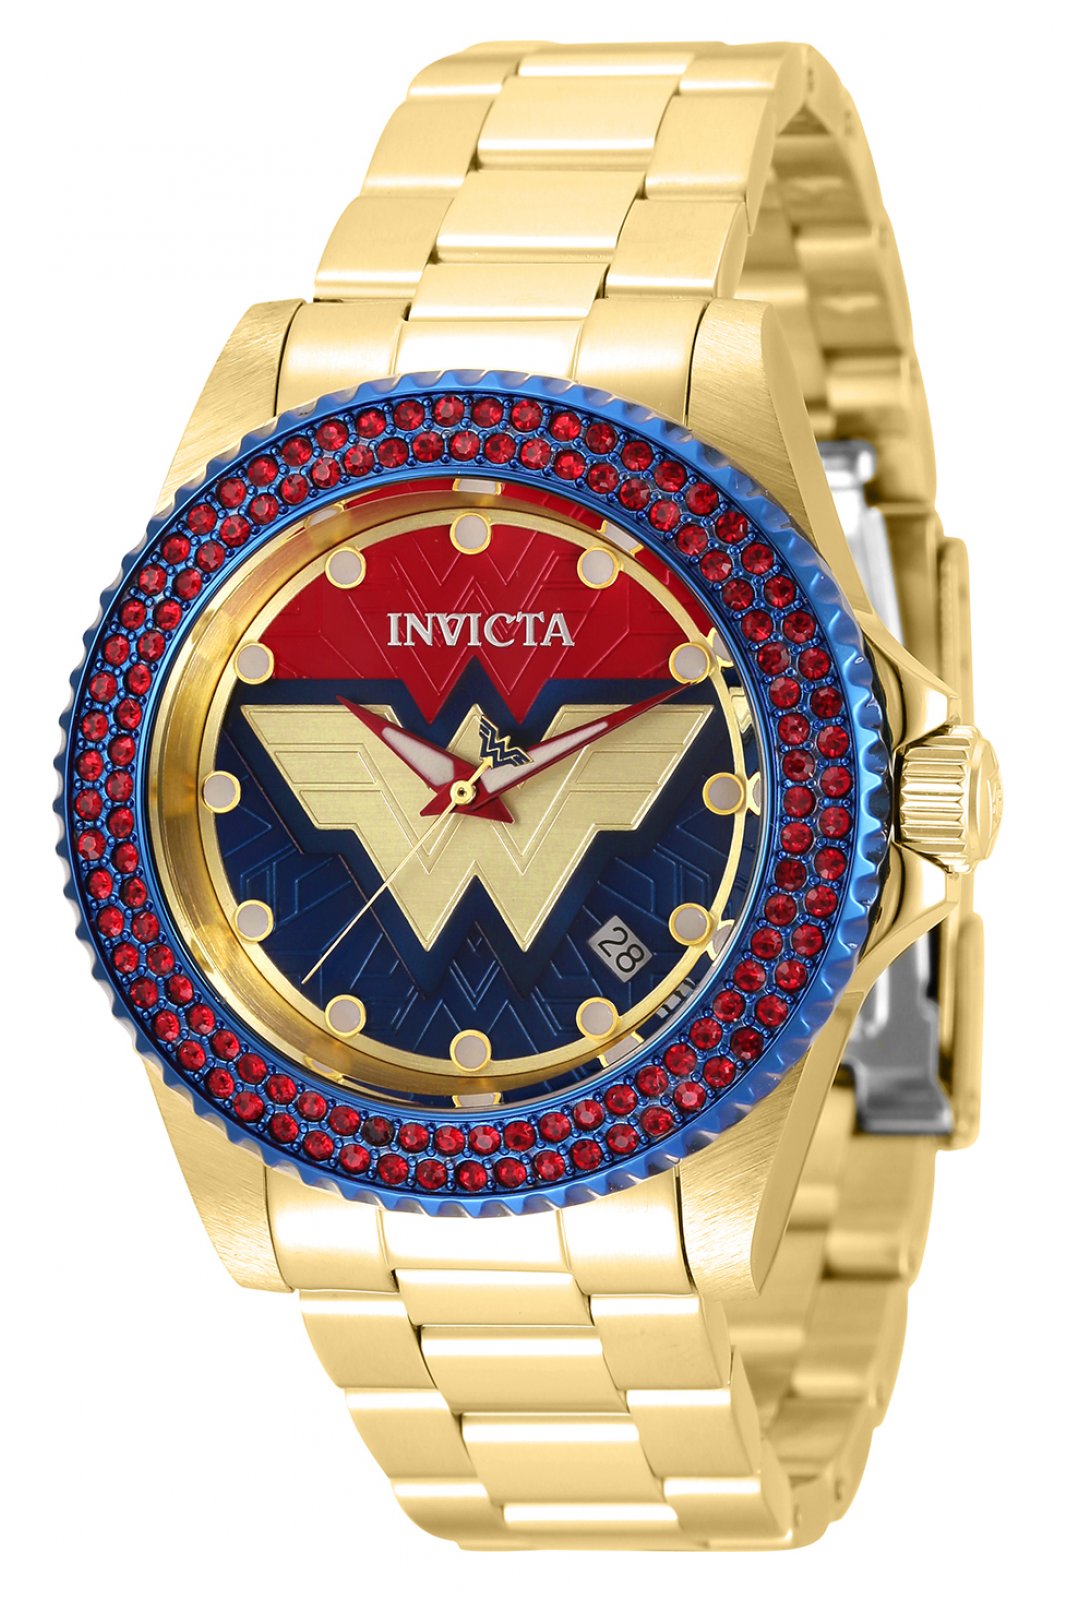 waterstof Vlekkeloos Bezwaar Invicta Horloge DC Comics - Wonder Woman 35642 - Officiële Invicta Shop -  Gratis verzending!